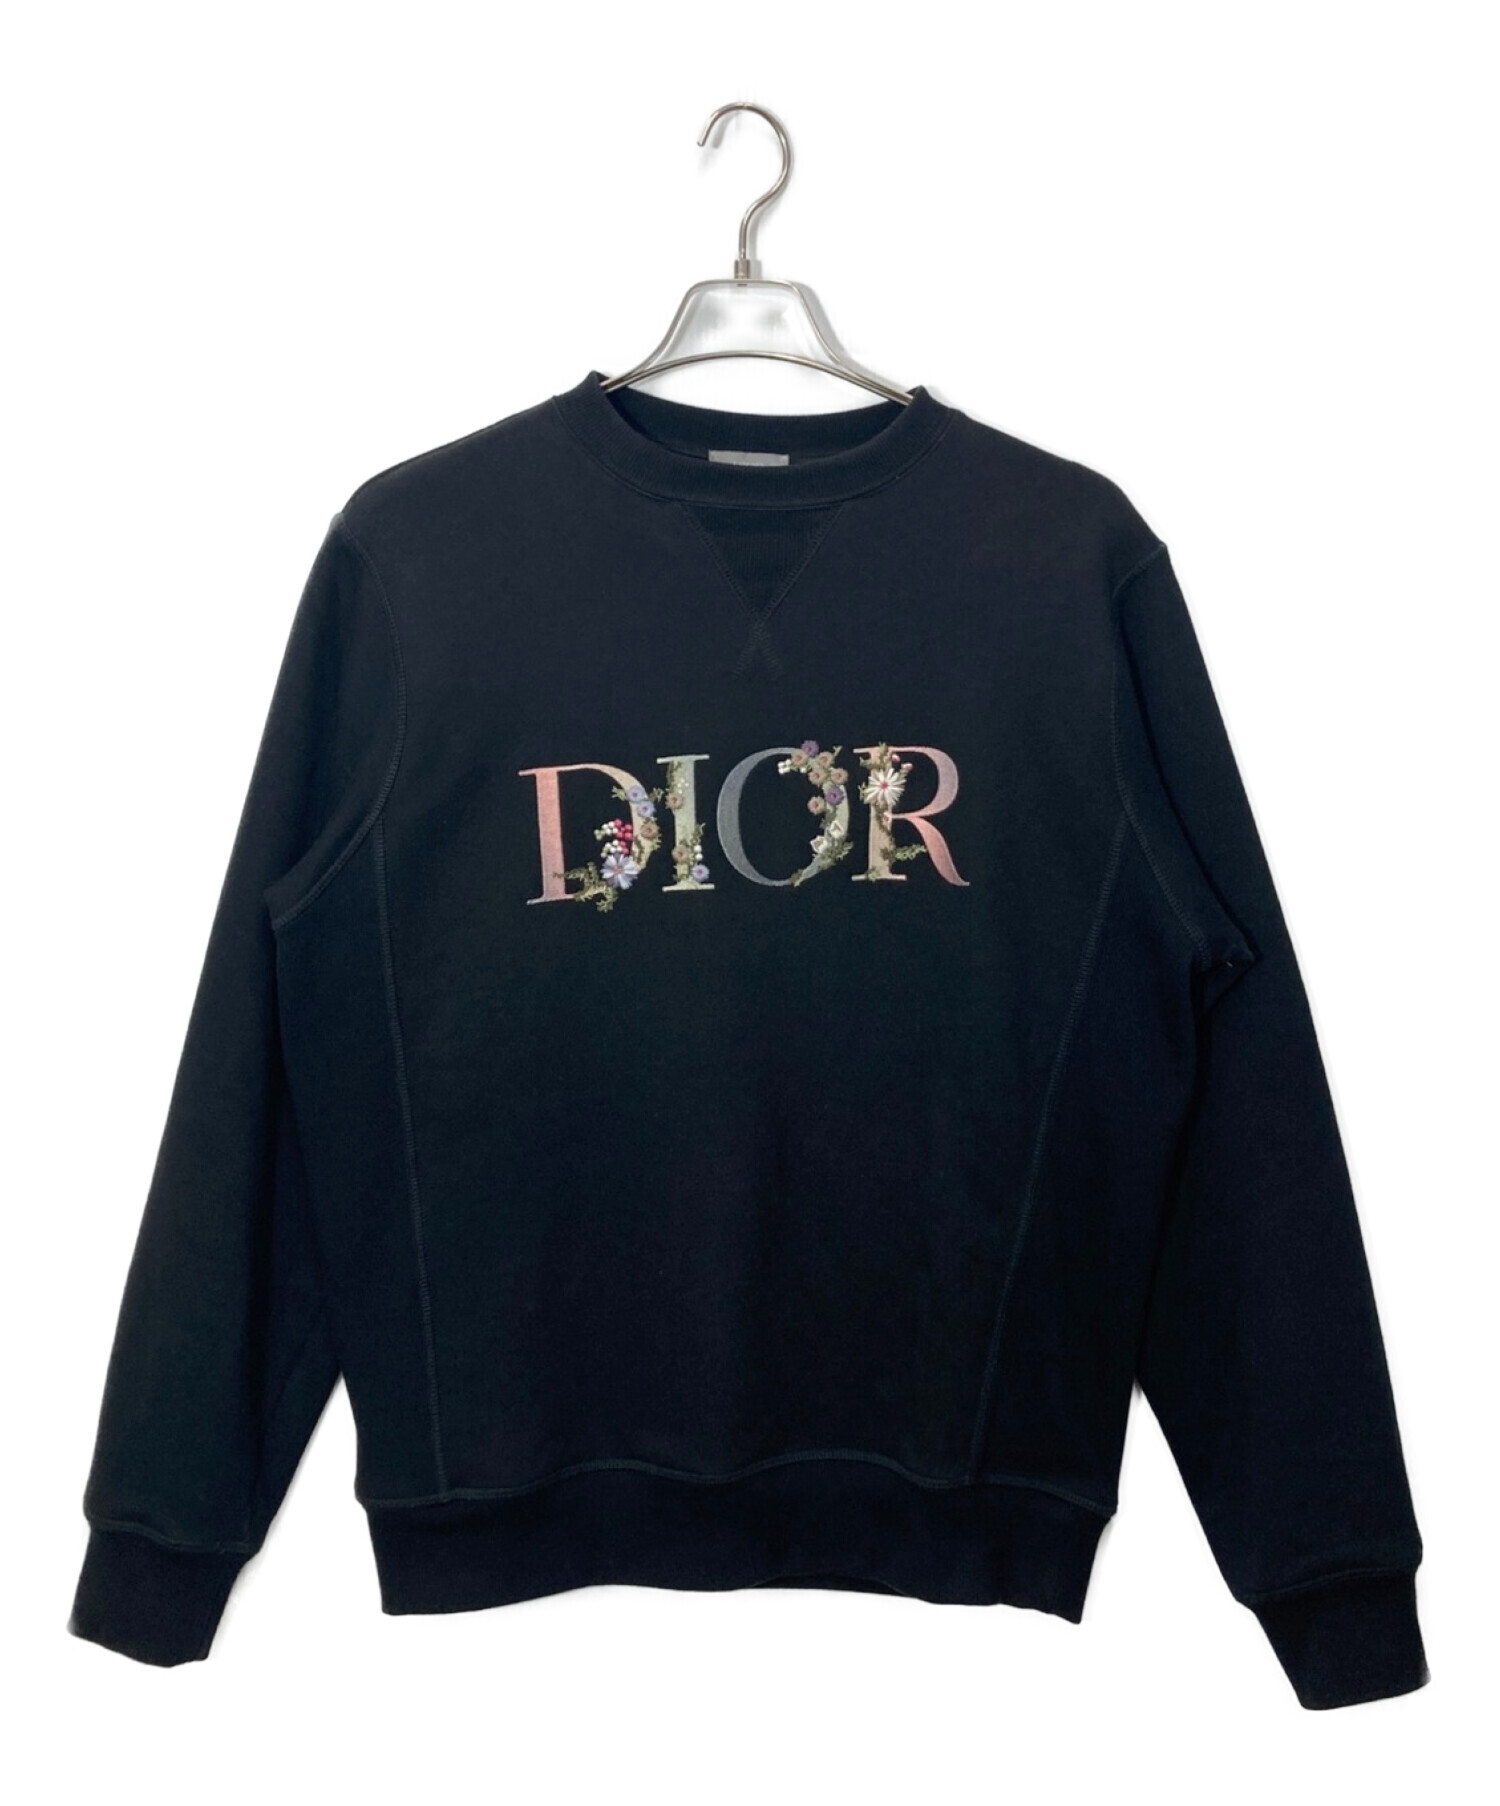 中古・古着通販】Dior (ディオール) フラワーロゴ刺繍スウェット ...